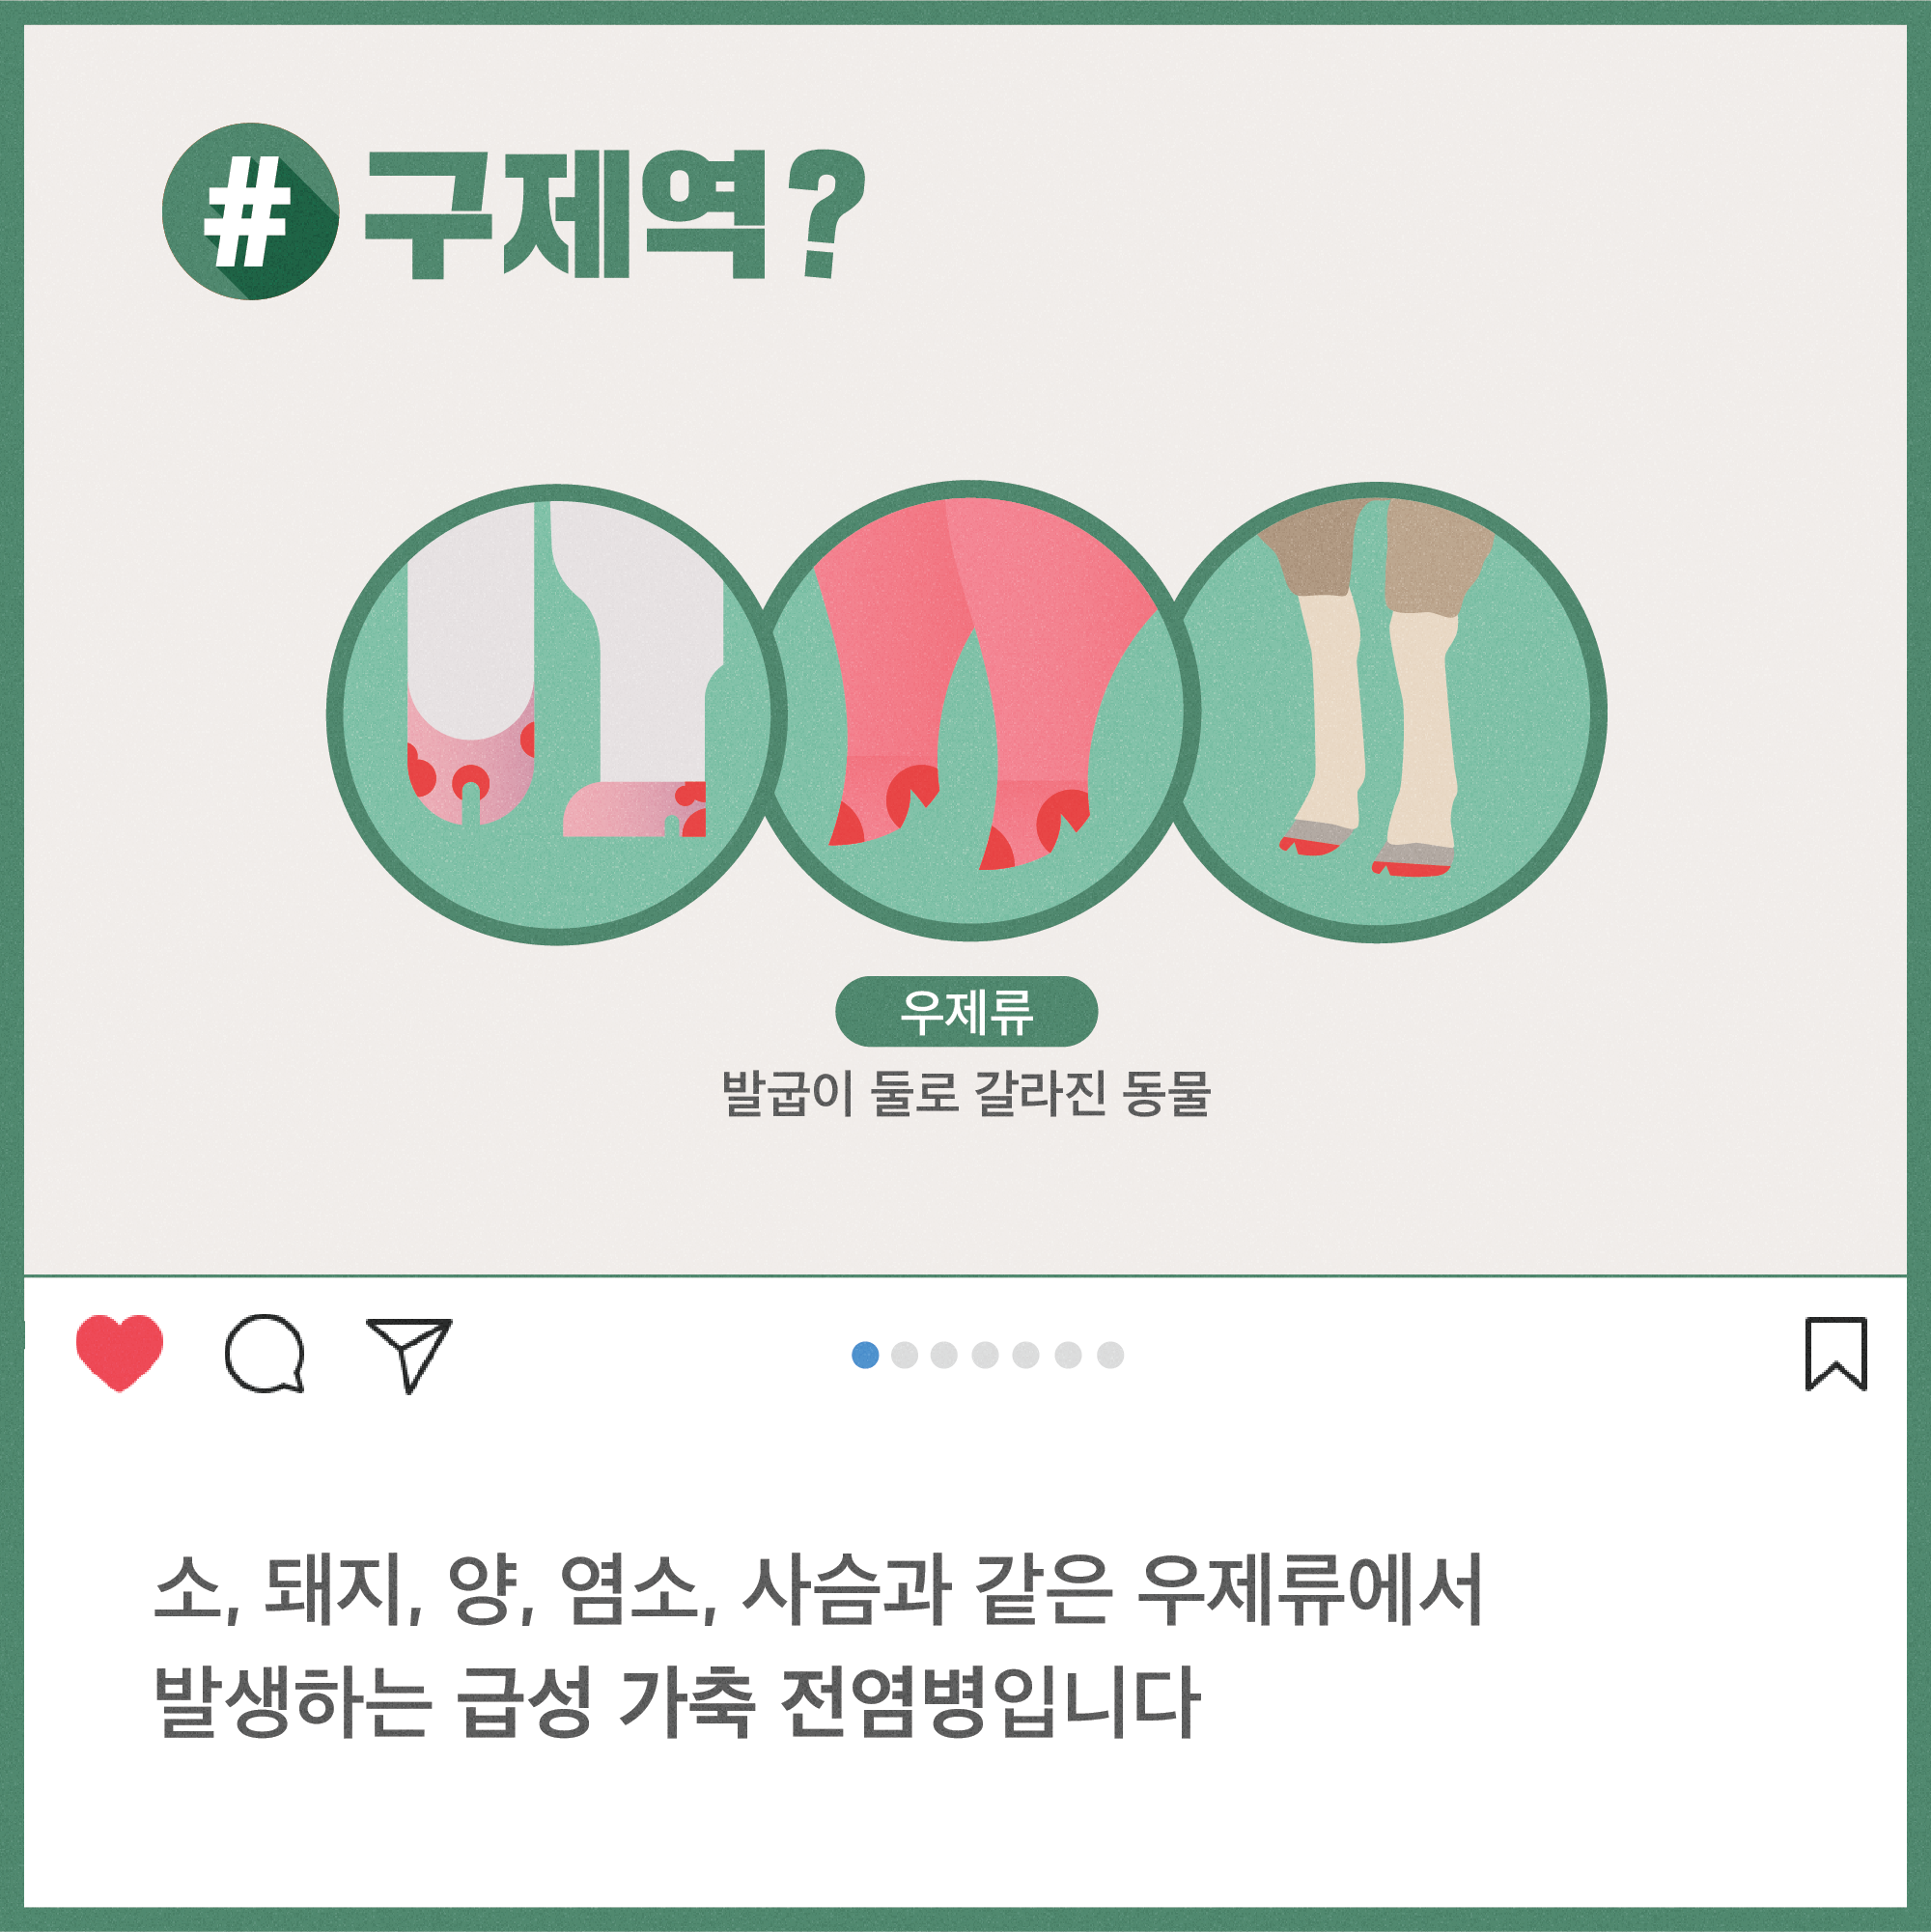 구제역 해시태그로 톺아보기 구제역_카드뉴스3-02.png